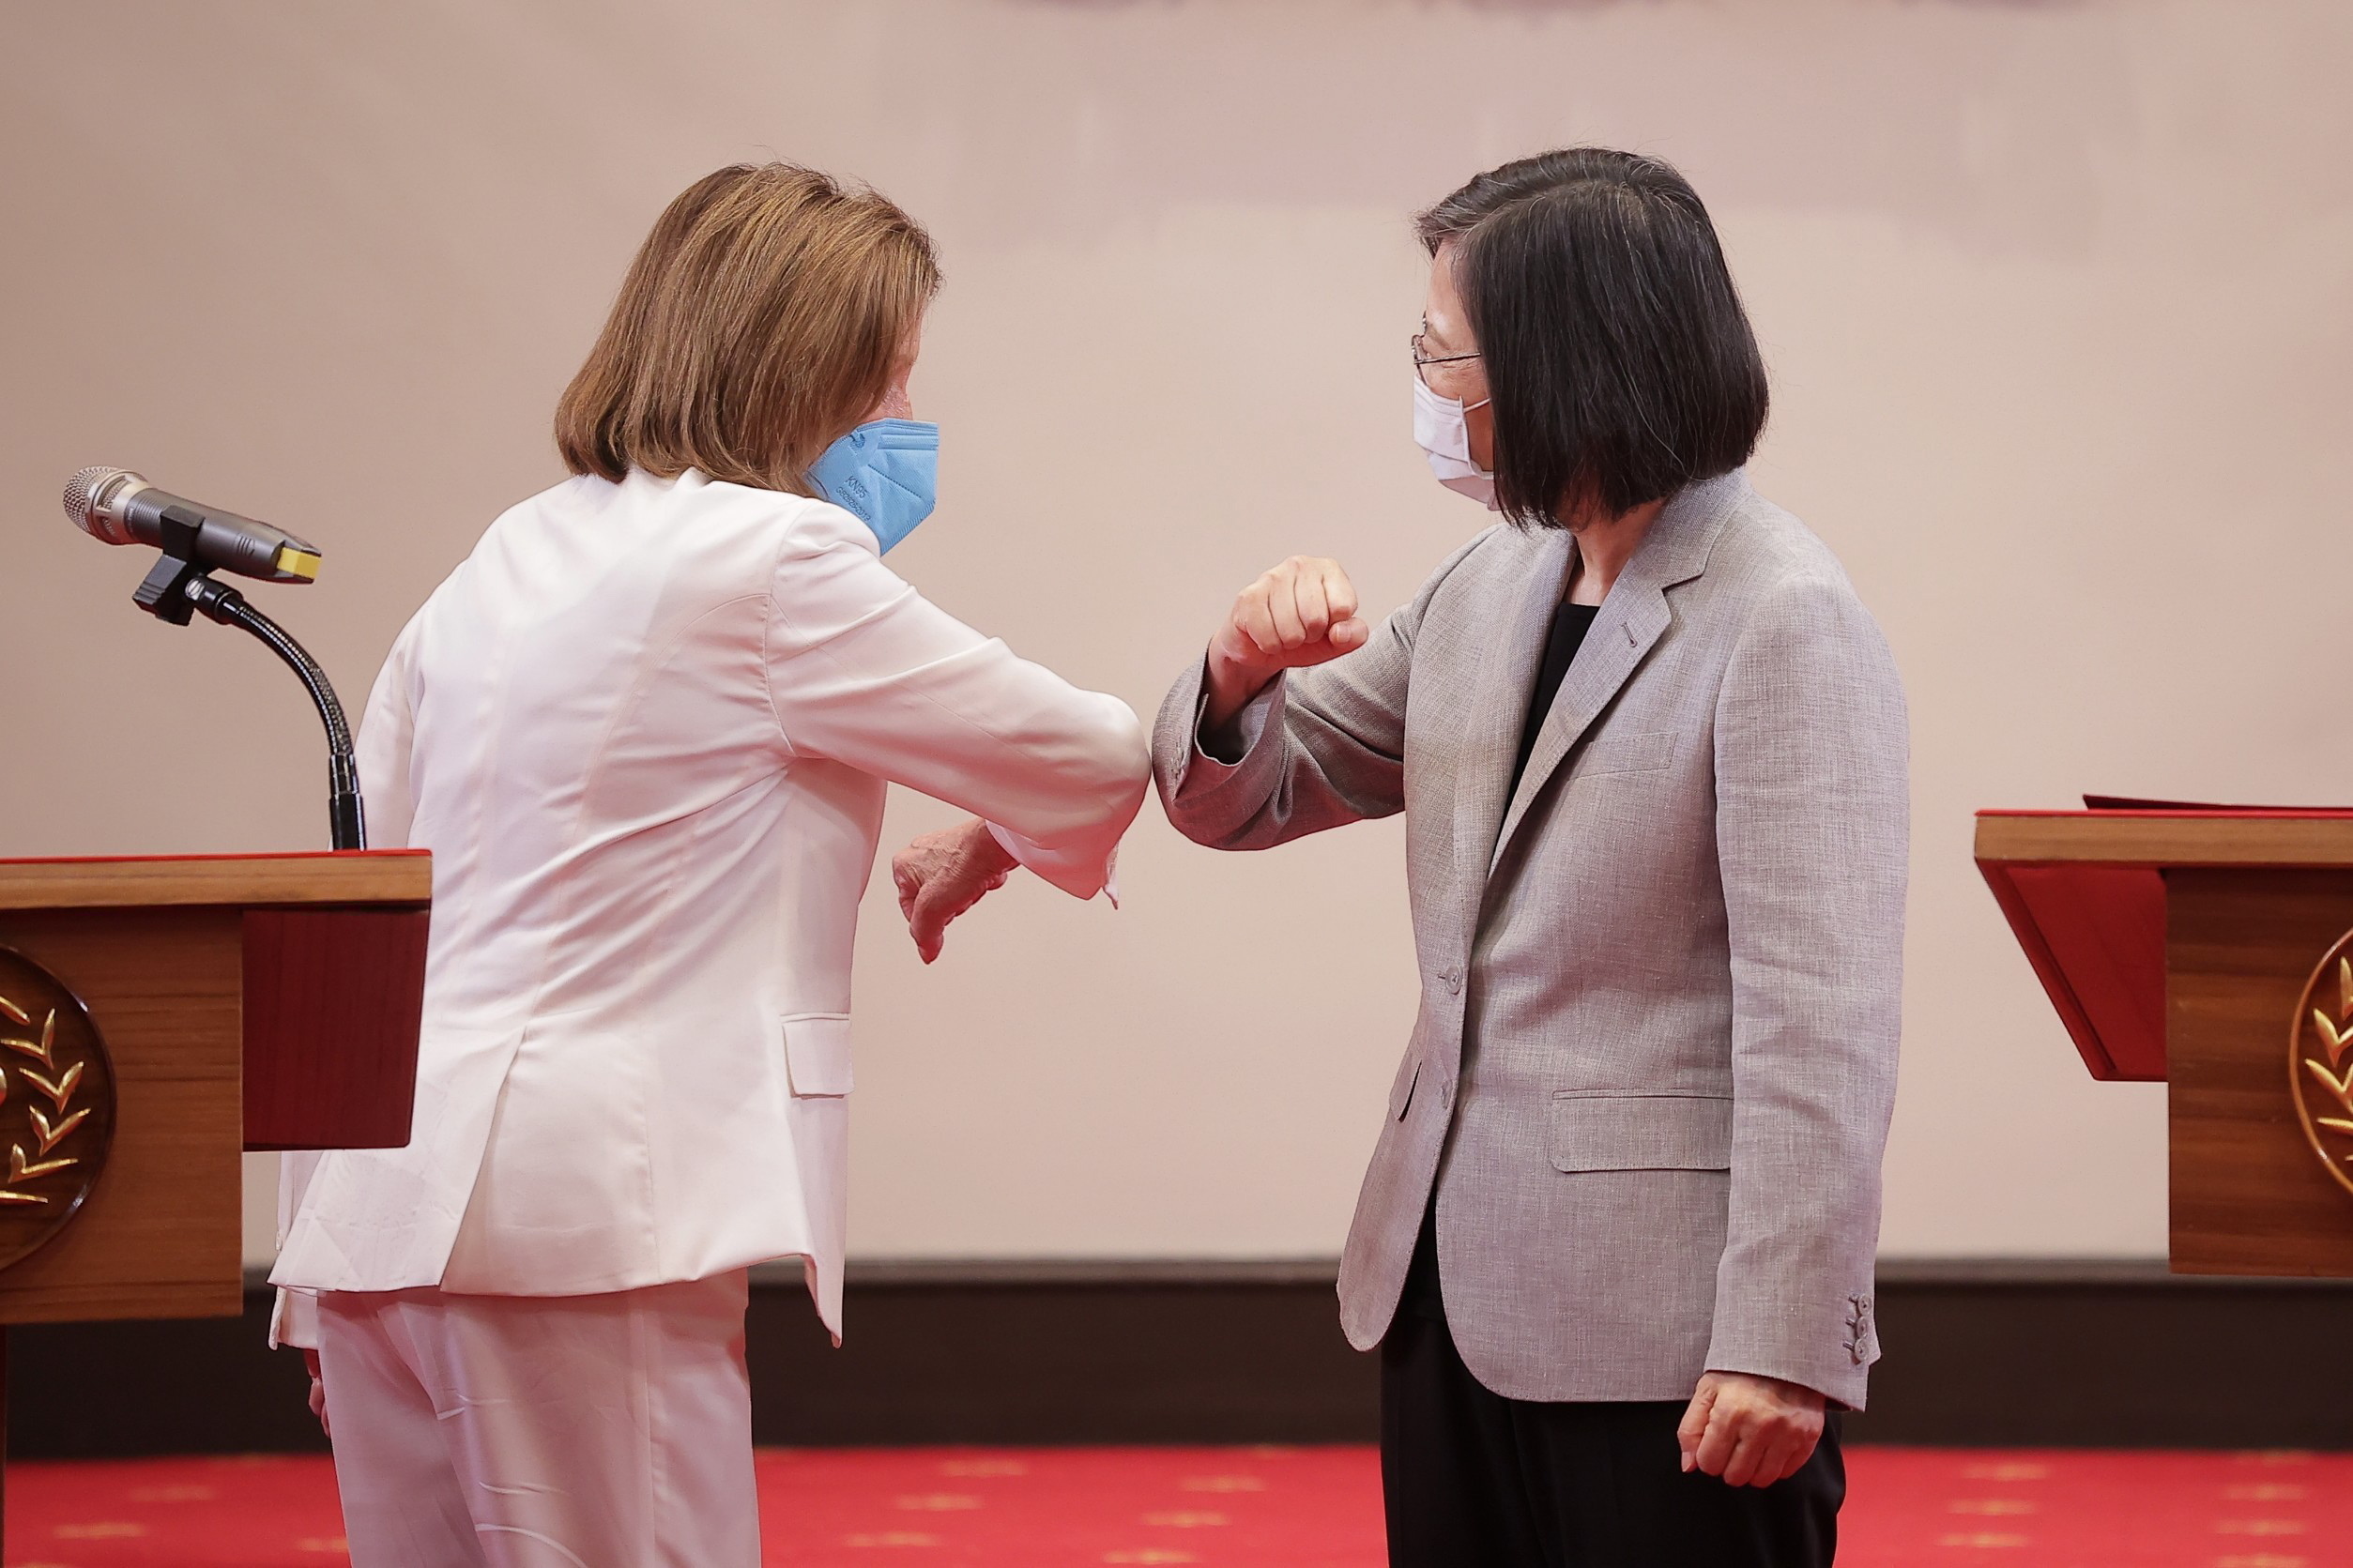 Una foto facilitada por la oficina presidencial de Taiwán muestra a la presidenta de la Cámara de Representantes de Estados Unidos, Nancy Pelosi (izq.), codeándose con la presidenta de Taiwán, Tsai Ing-wen, durante una rueda de prensa en el Palacio Presidencial en Taipei, Taiwán, el 3 de agosto de 2022. Pelosi, la funcionaria estadounidense de mayor rango en visitar la isla en 25 años, comenzó su visita en Taiwán a pesar de las fuertes advertencias de acción militar de China contra la visita. (Estados Unidos)